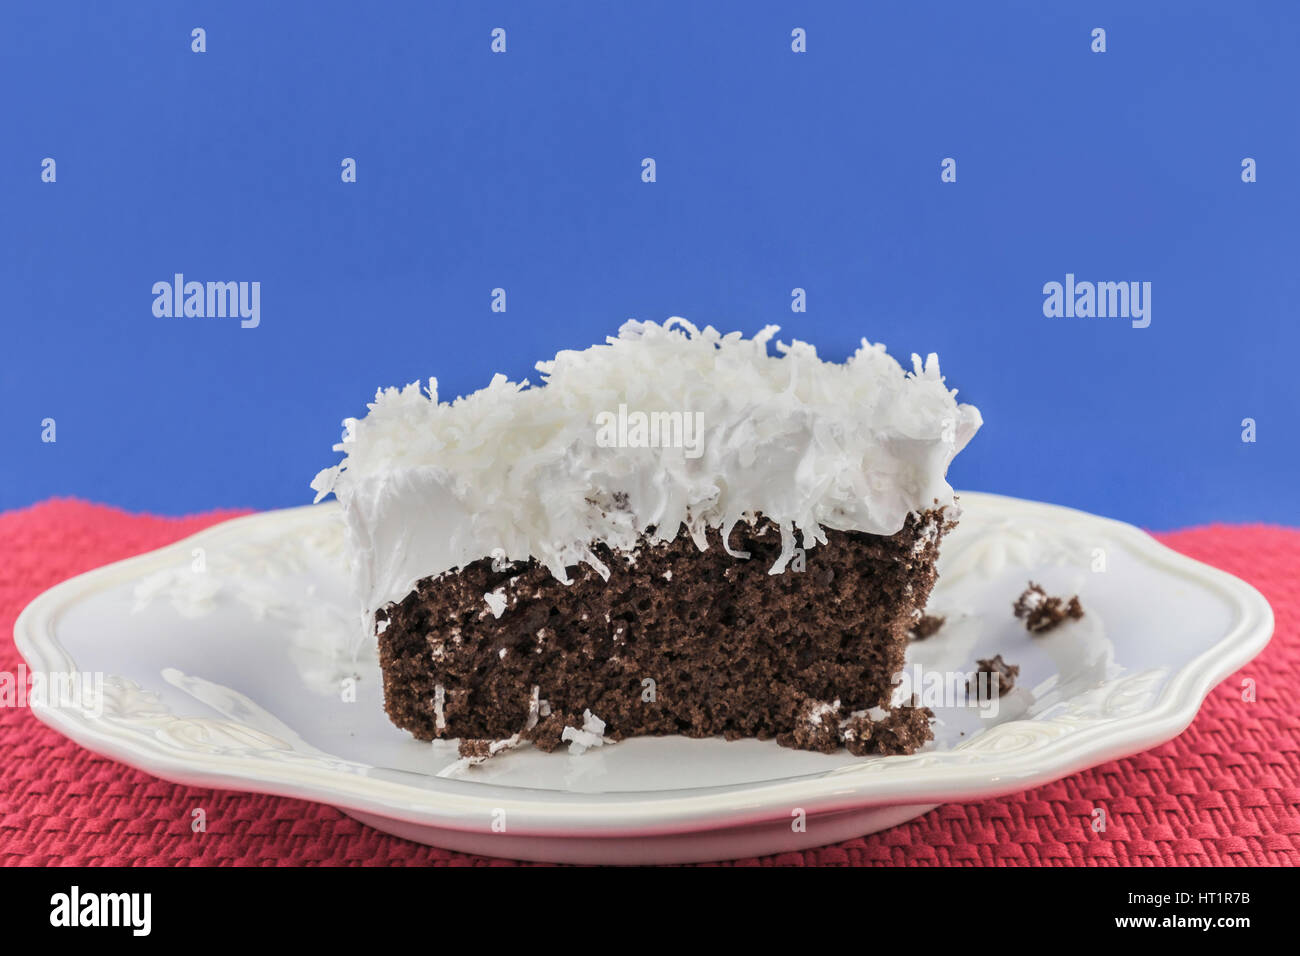 Un pezzo di torta al cioccolato con soffici glassa bianca guarnita con noce di cocco grattugiata su un bianco che serve la piastra. Oklahoma, Stati Uniti d'America. Foto Stock